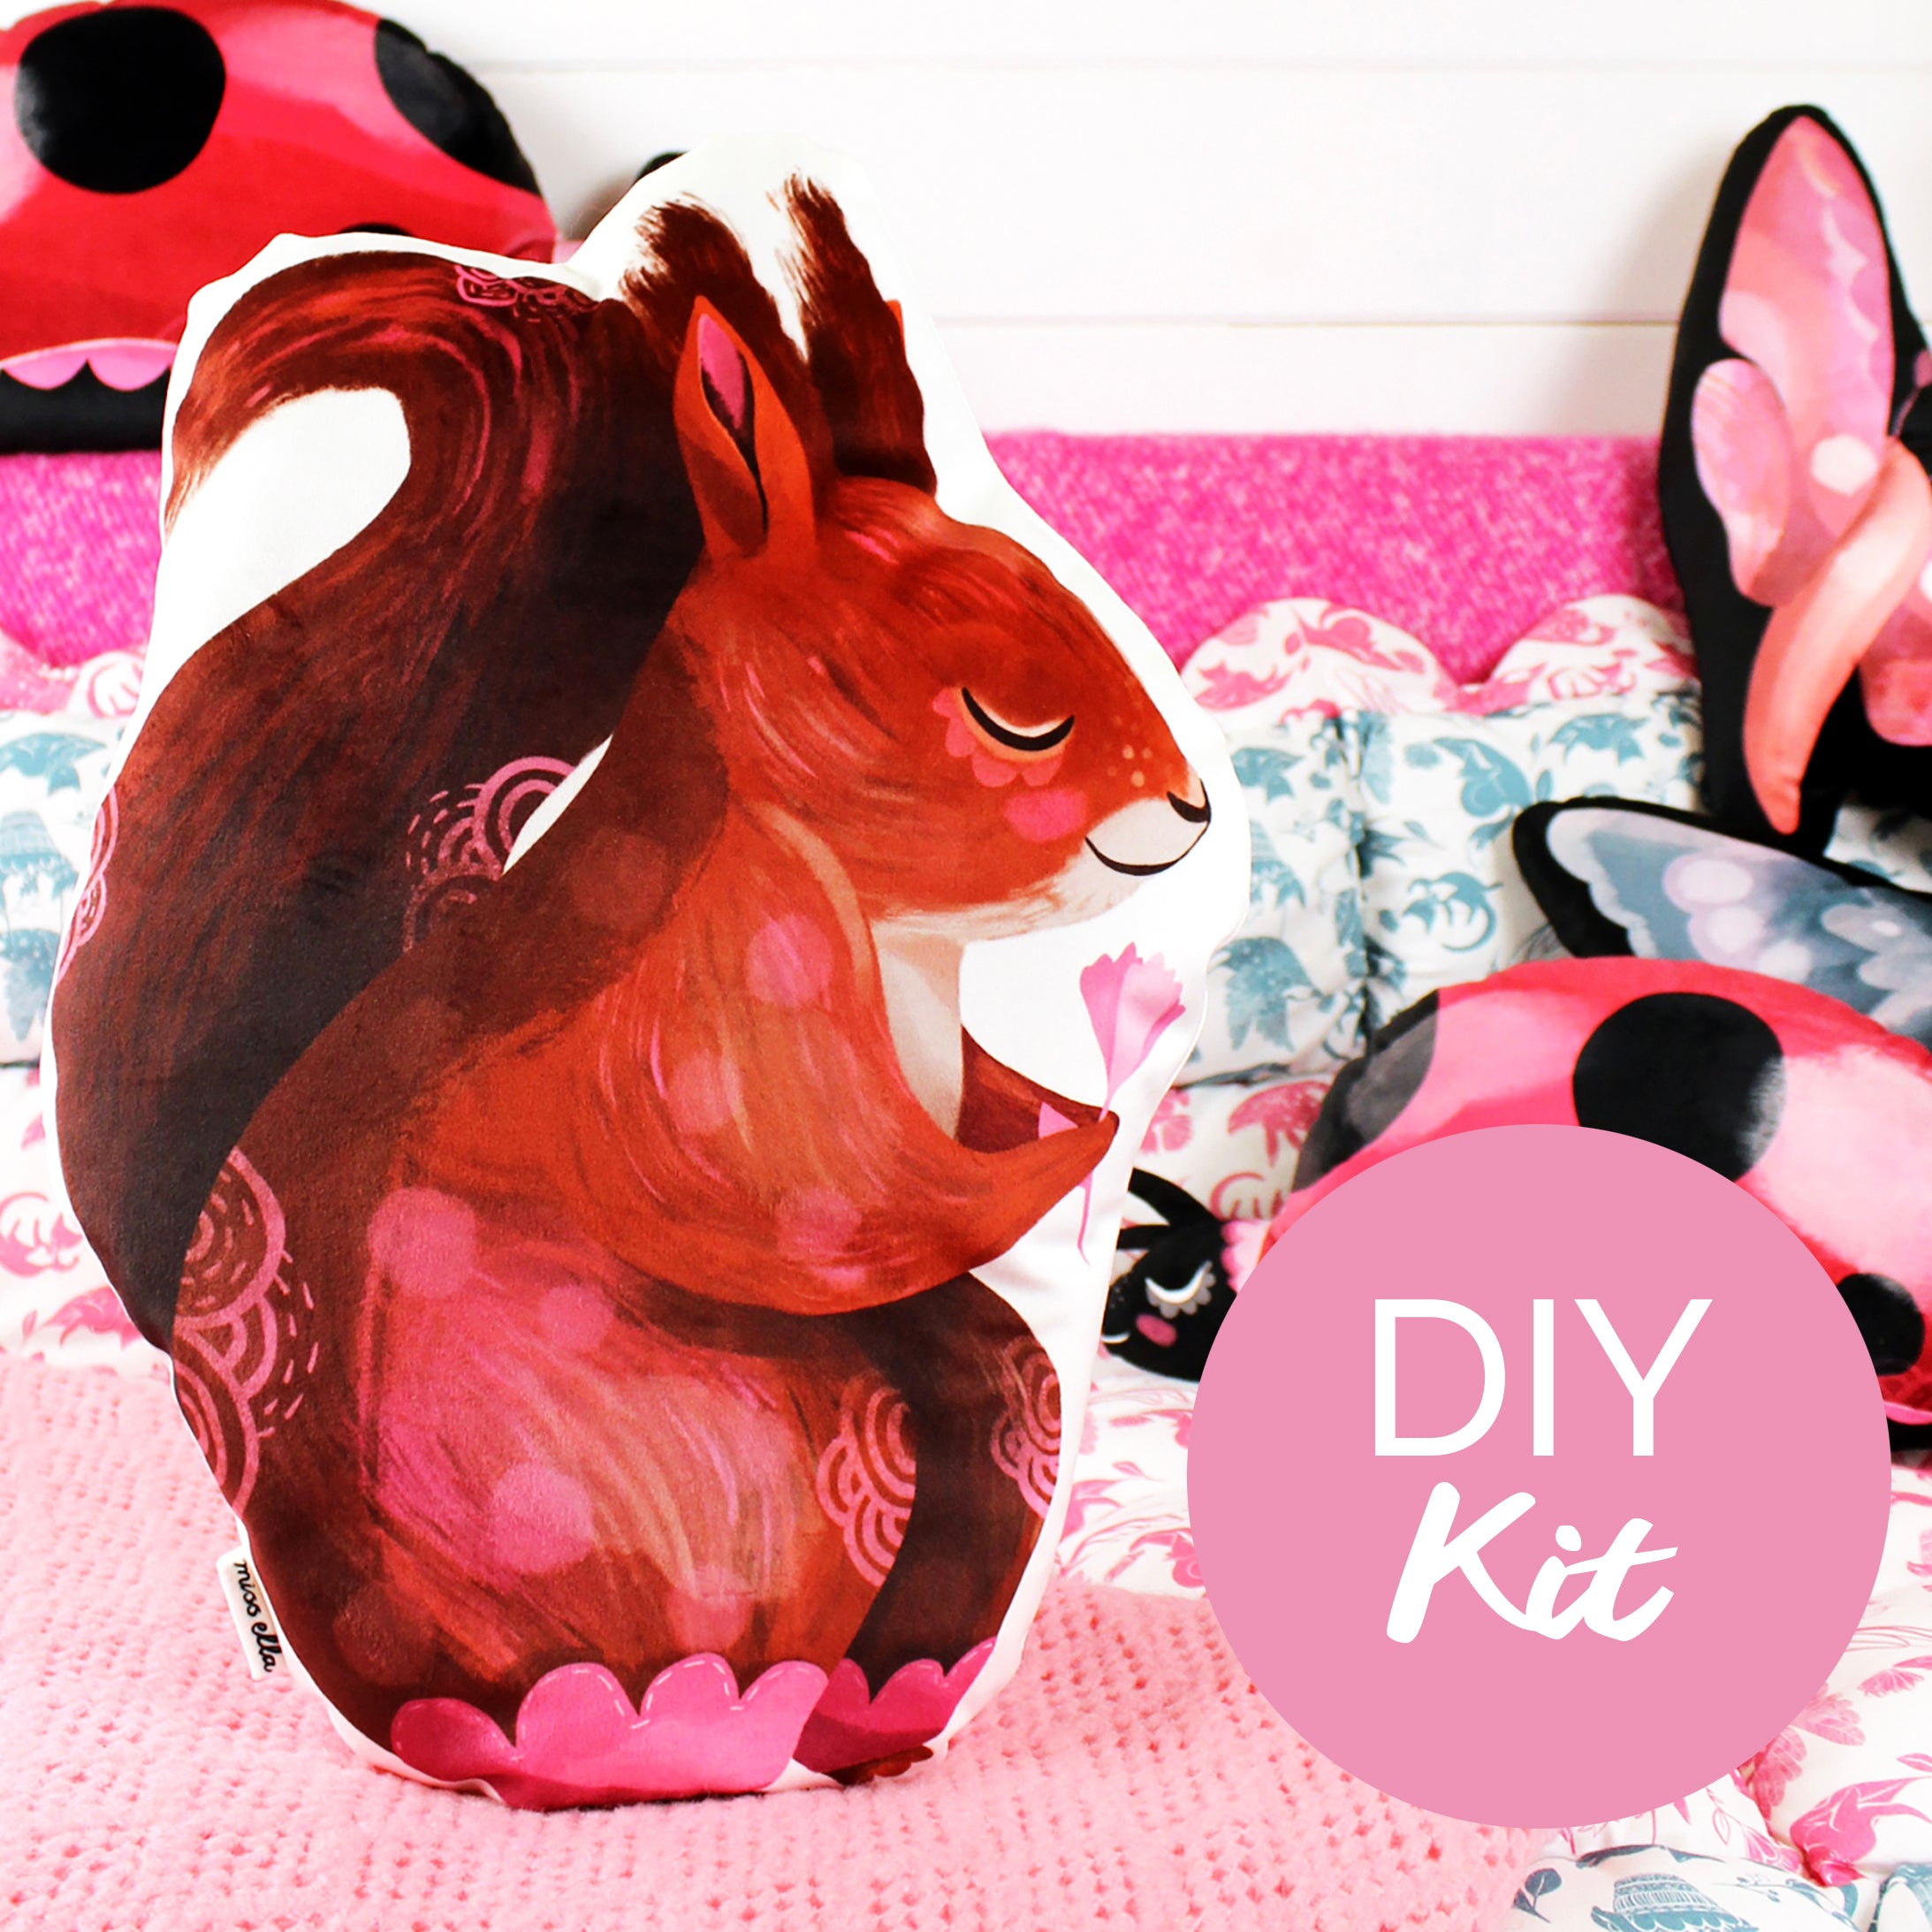 DIY sewing KIT - Red Squirrel Cushion